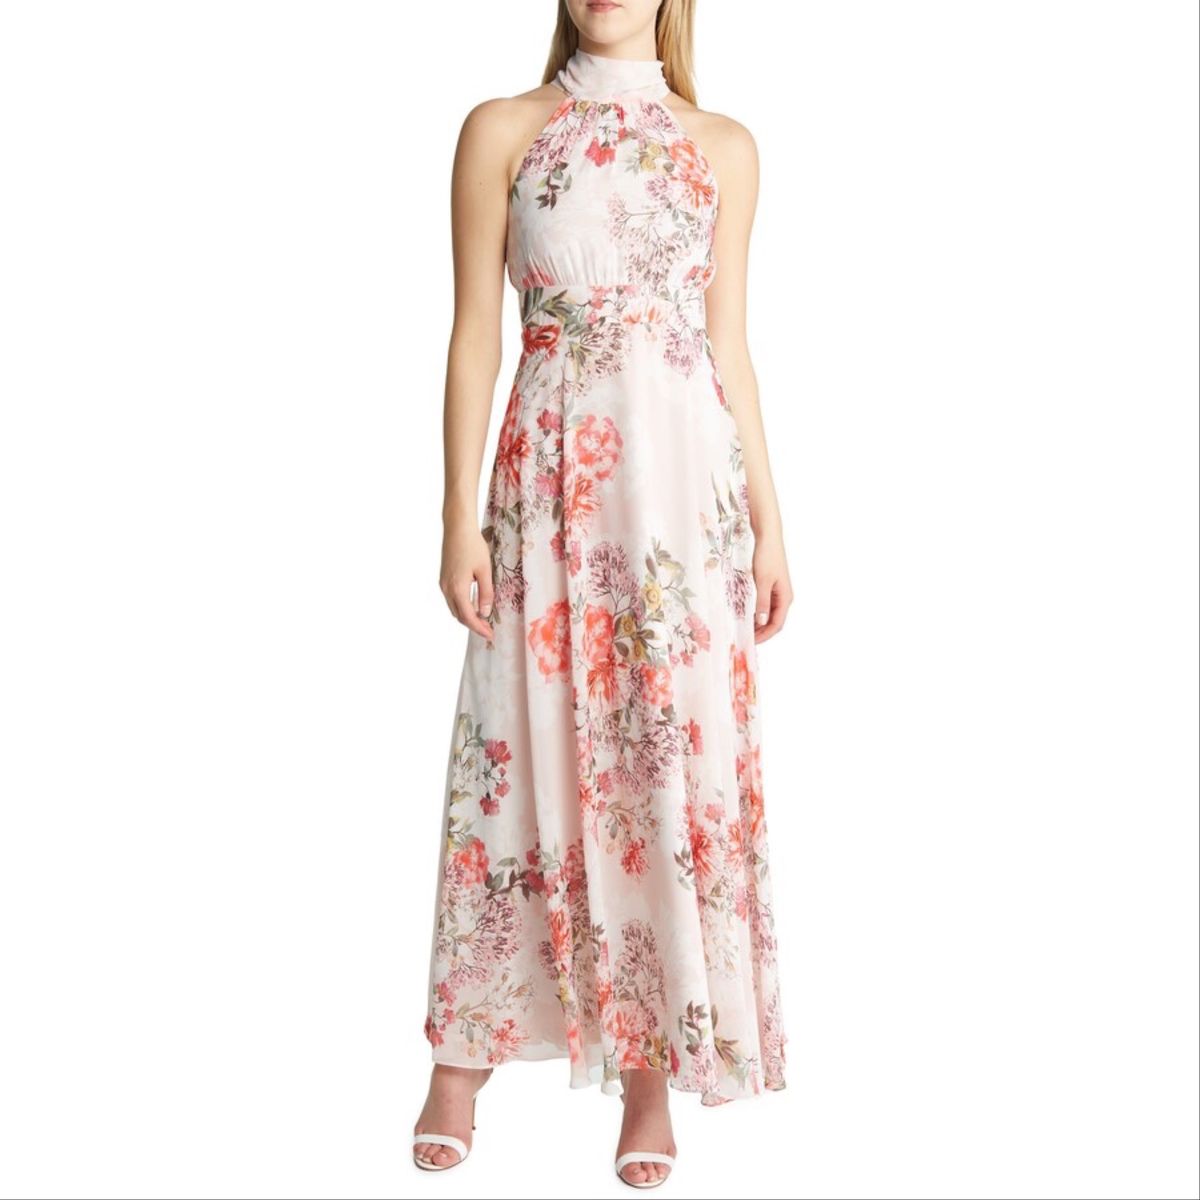 Eliz J Size 12 Prom Halter Floral Pink A-line Dress on Queenly